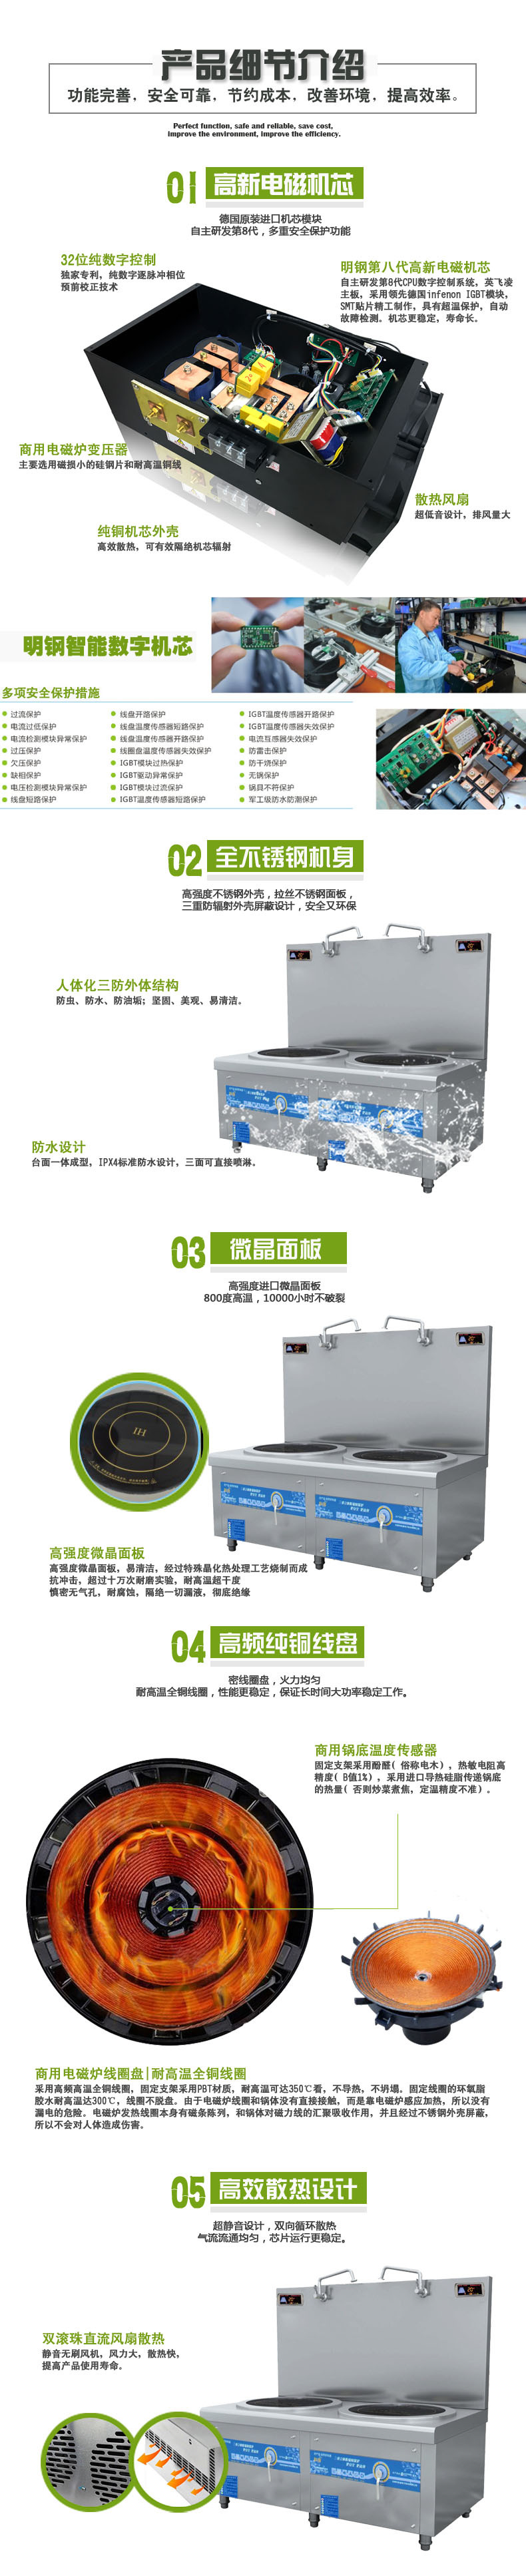 科越供应科创商用电磁双头矮汤炉 商用环保节能电磁炉电磁煲汤炉